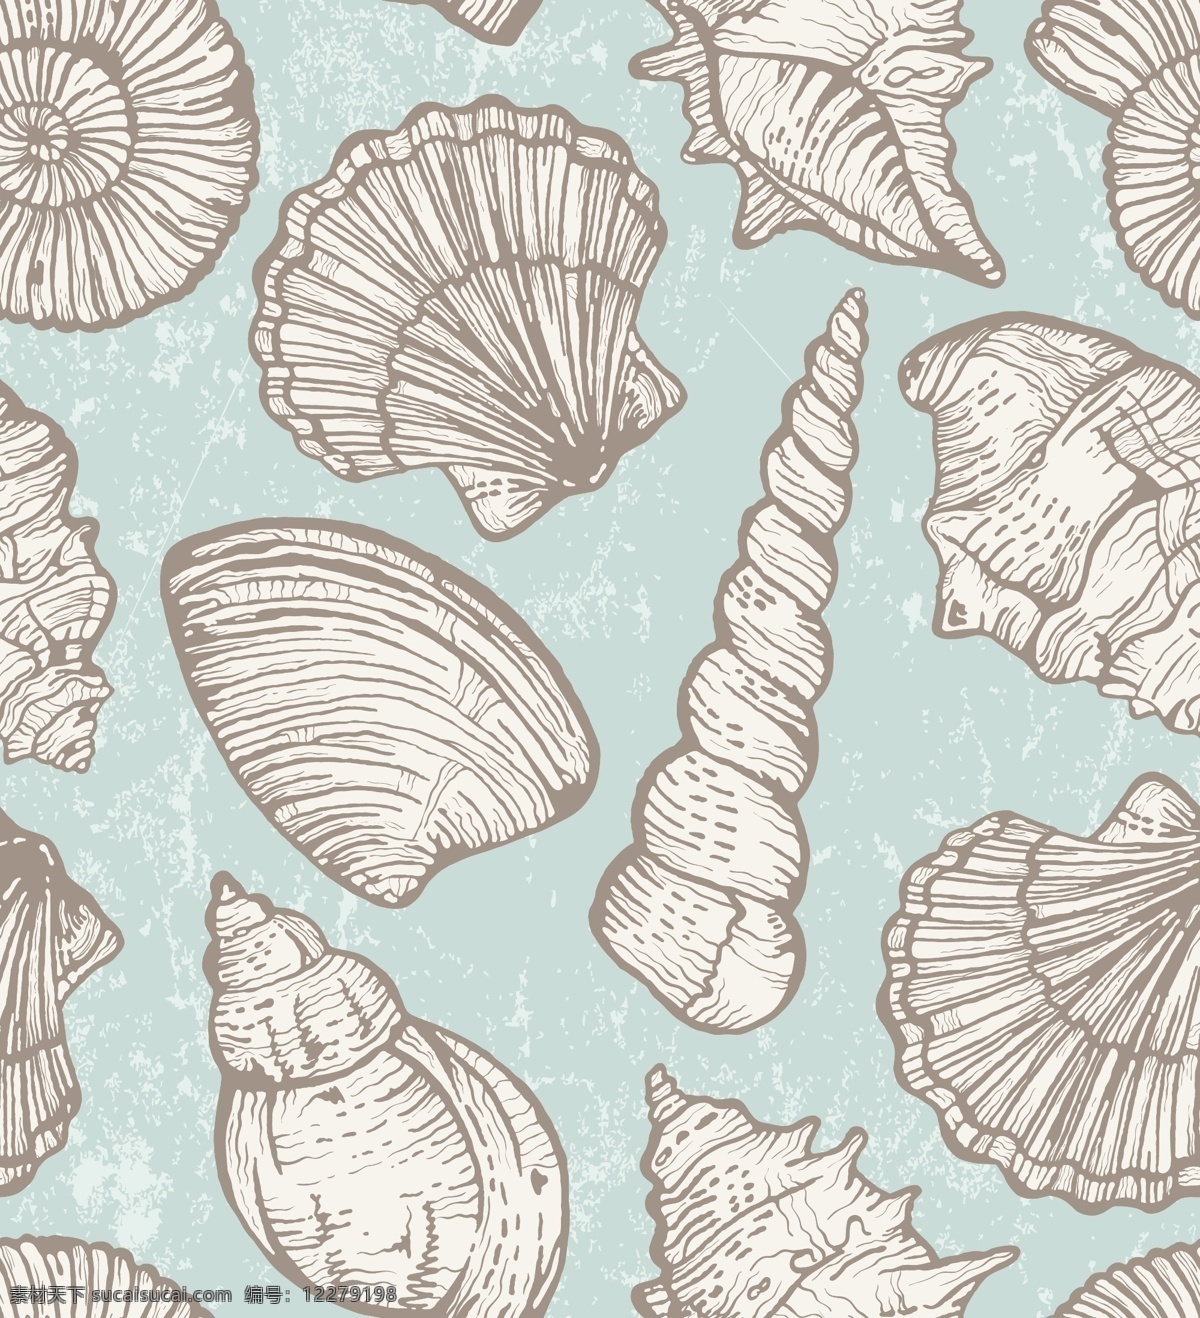 海洋 海螺 无缝 背景 贝壳 矢量图 背景素材 矢量背景 贝壳背景 海鲜背景 eps素材